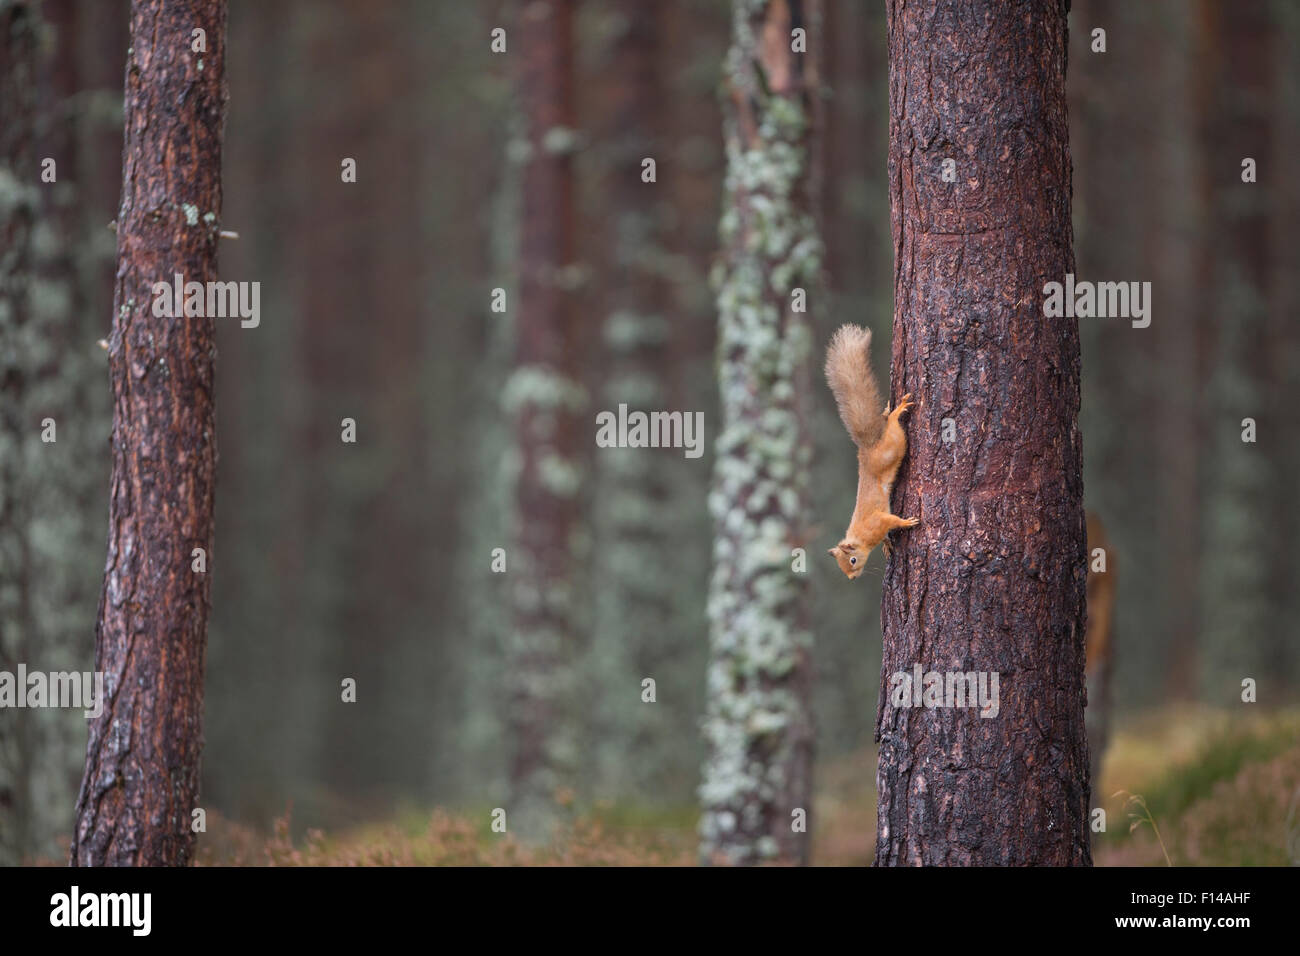 Eichhörnchen (Sciurus Vulgaris) auf Nahrungssuche im Wald, Baumstamm, Cairngorms National Park, Schottland Oktober Abstieg. Stockfoto